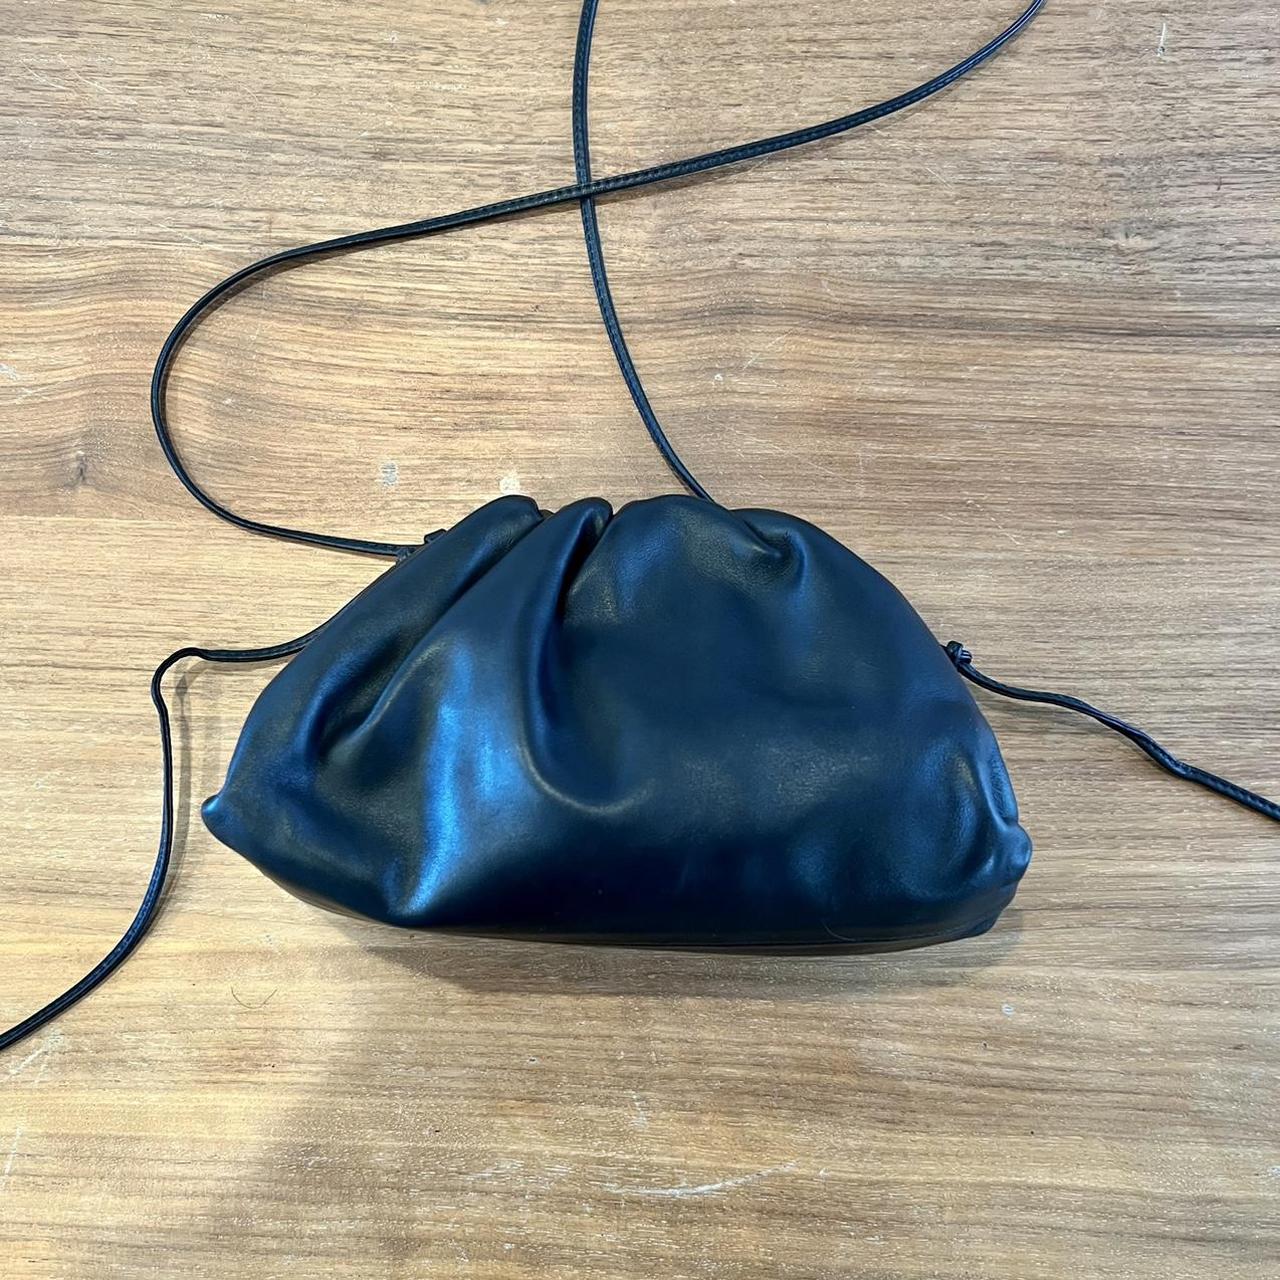 Bottega Veneta Mini Pouch Bag – Modecraze